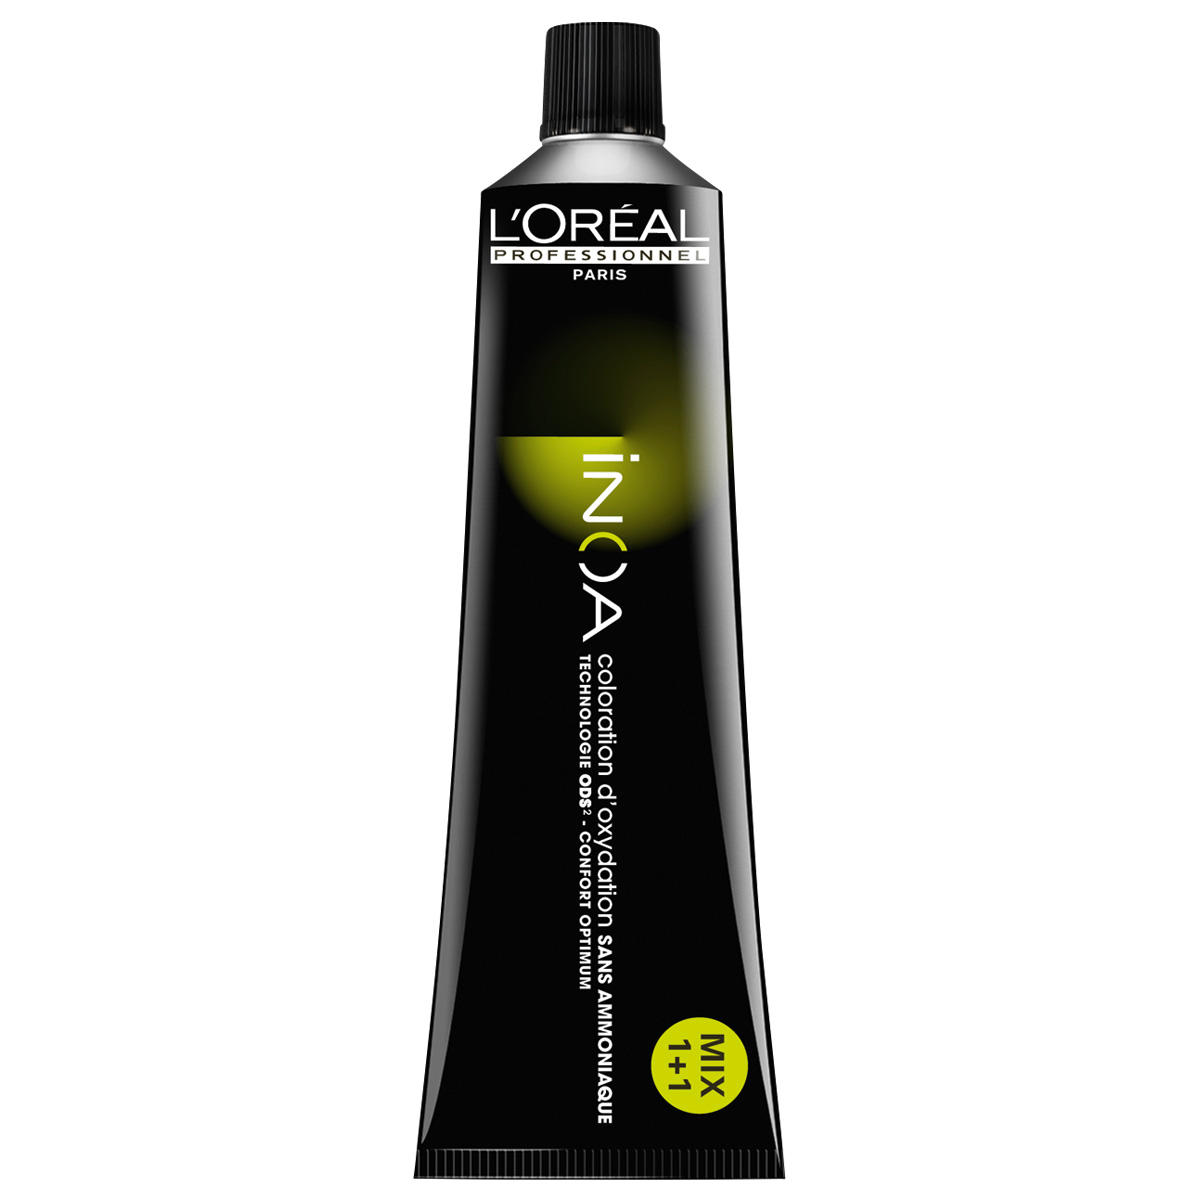 L'Oréal Professionnel Paris Coloration 8 Biondo chiaro, tubo 60 ml